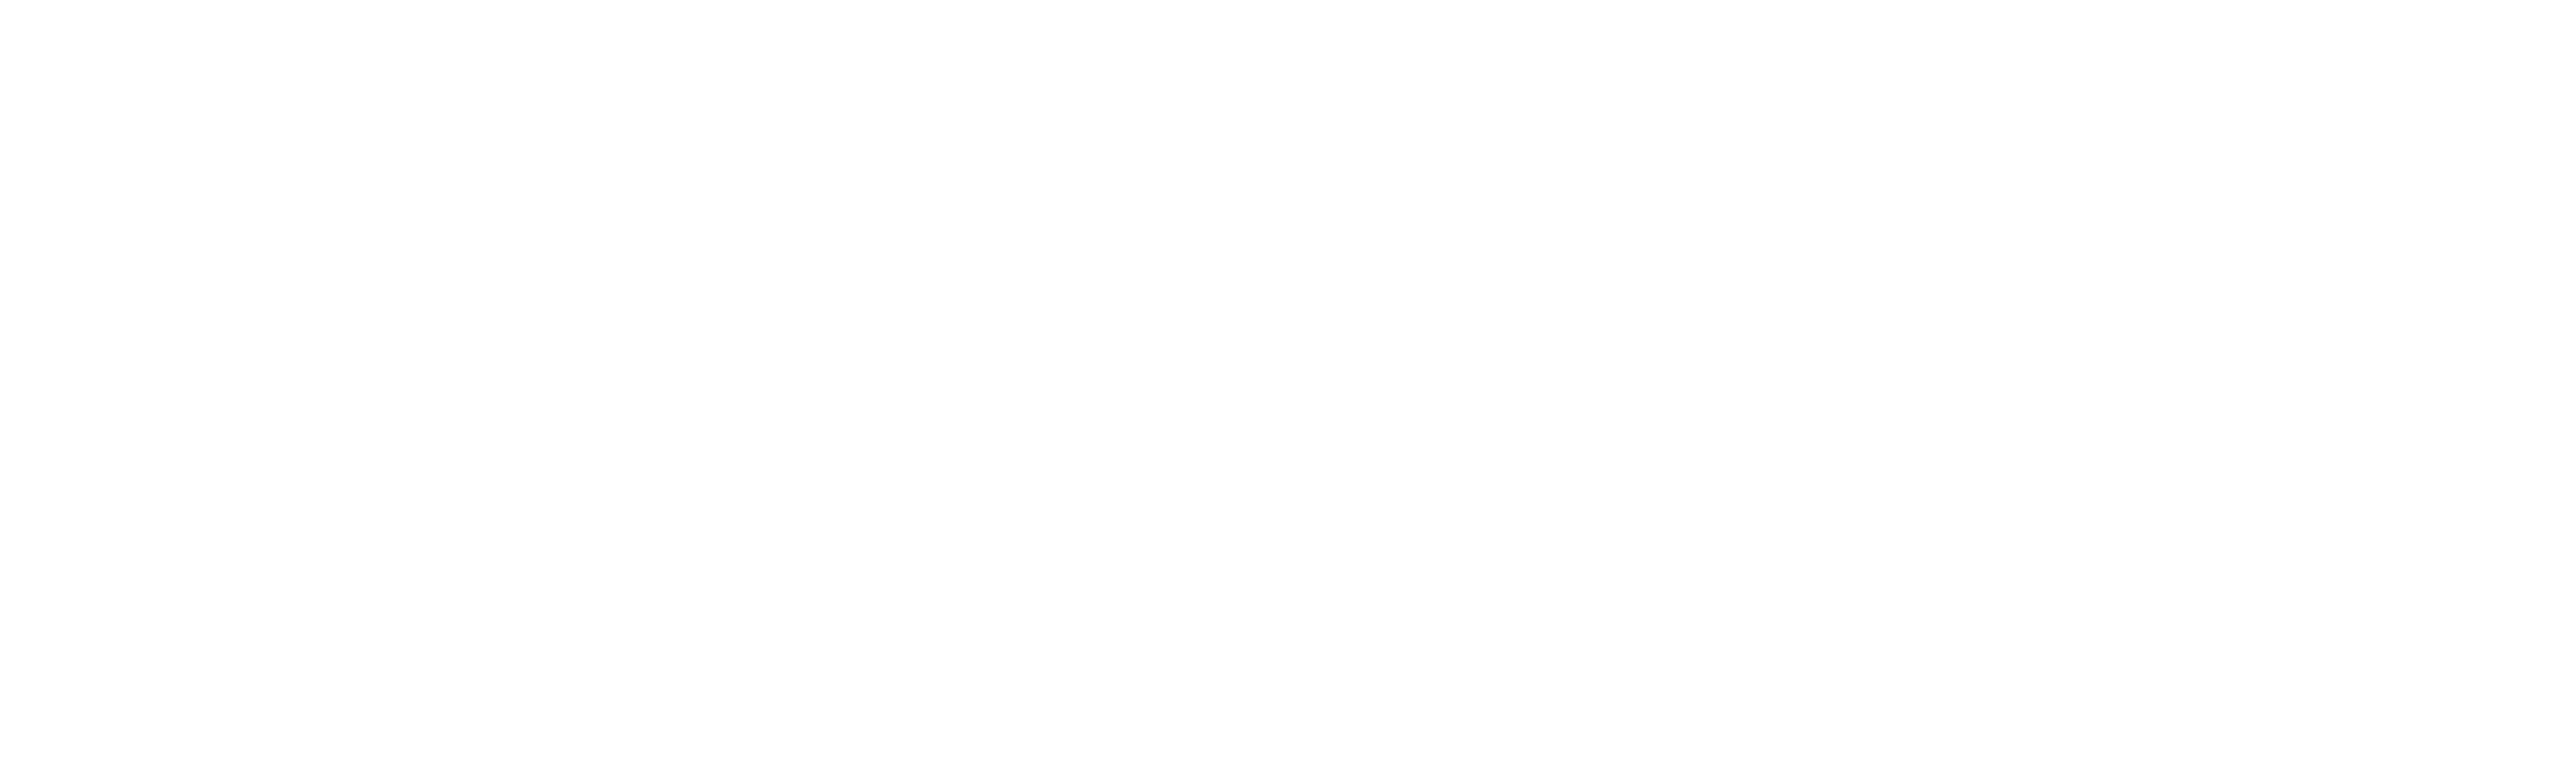 hospital-authority-logo-white